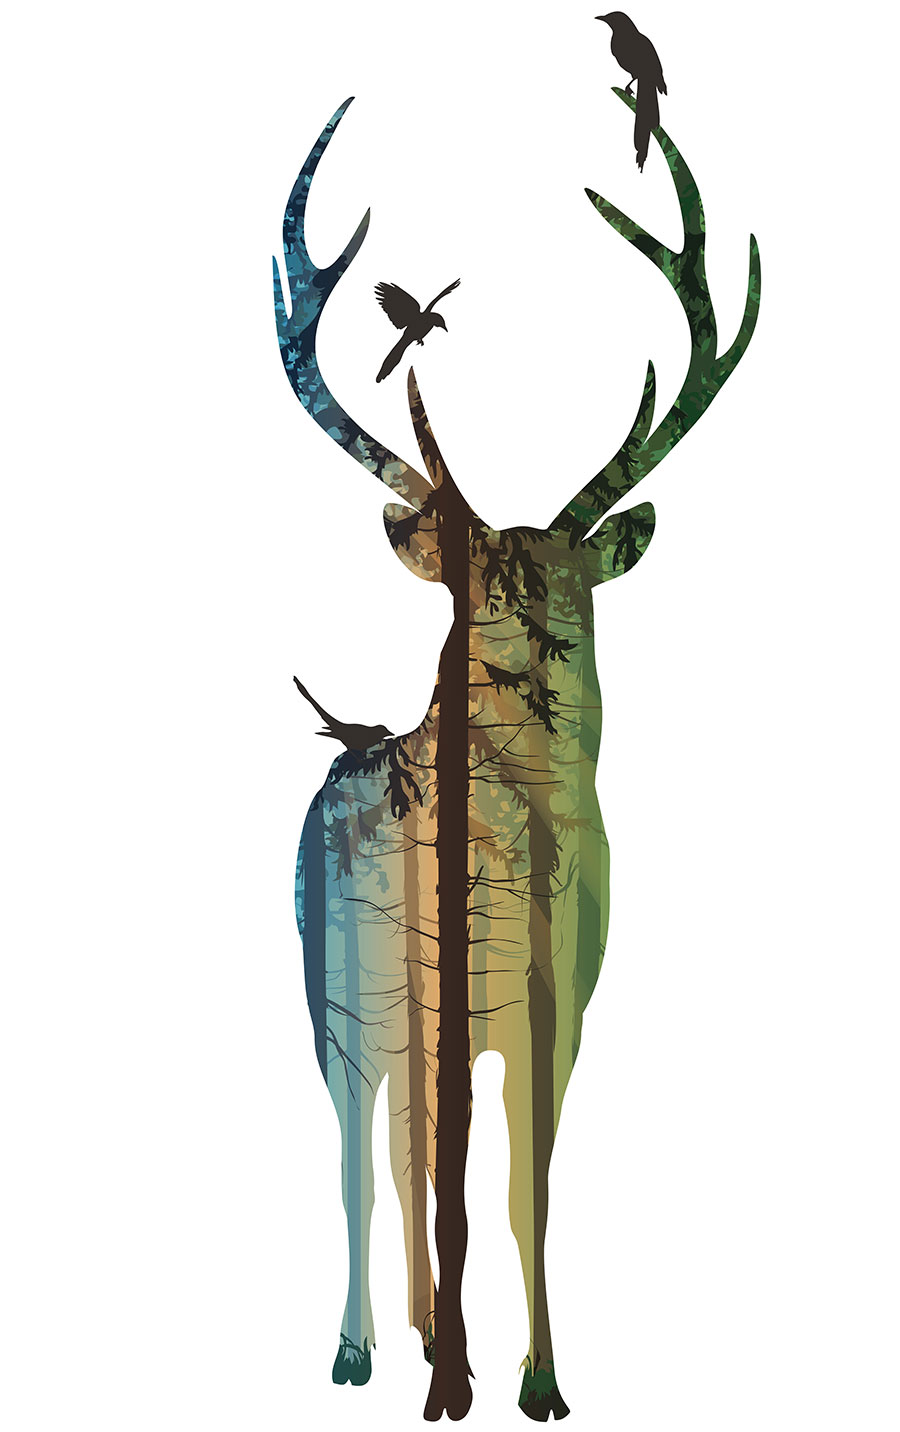 现代高清麋鹿装饰画,创意麋鹿画,北欧风格麋鹿画大图下载,麋鹿一家